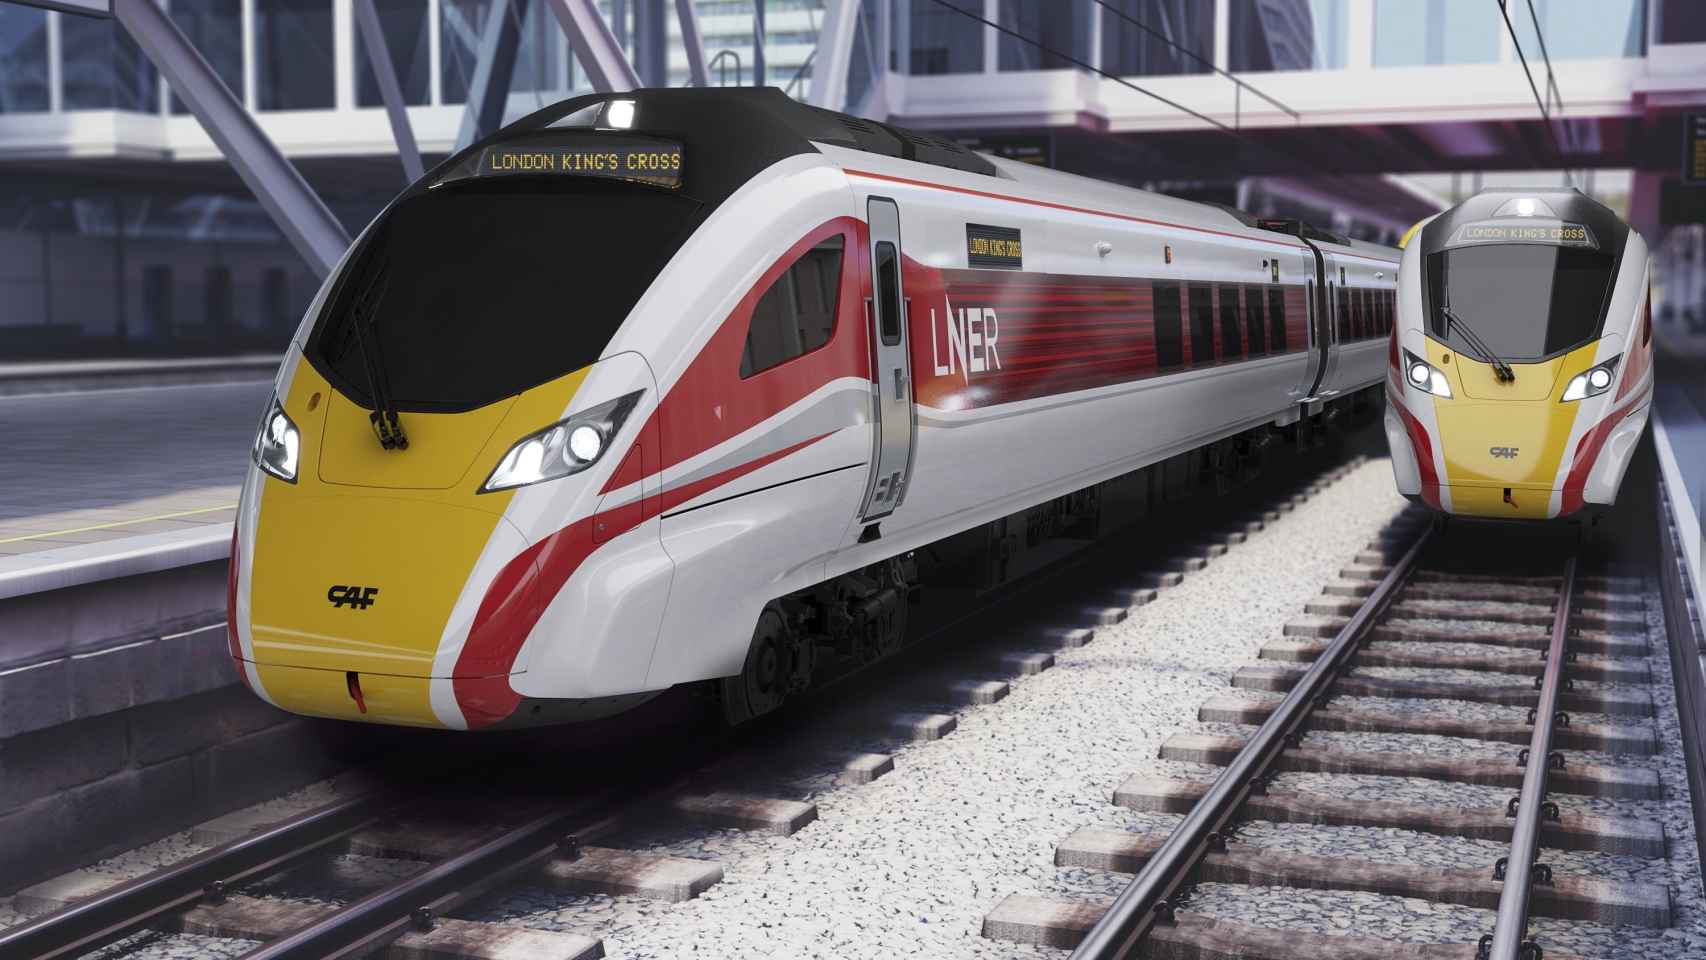 CAF suministrará 10 trenes tri-modo en Londres / CAF